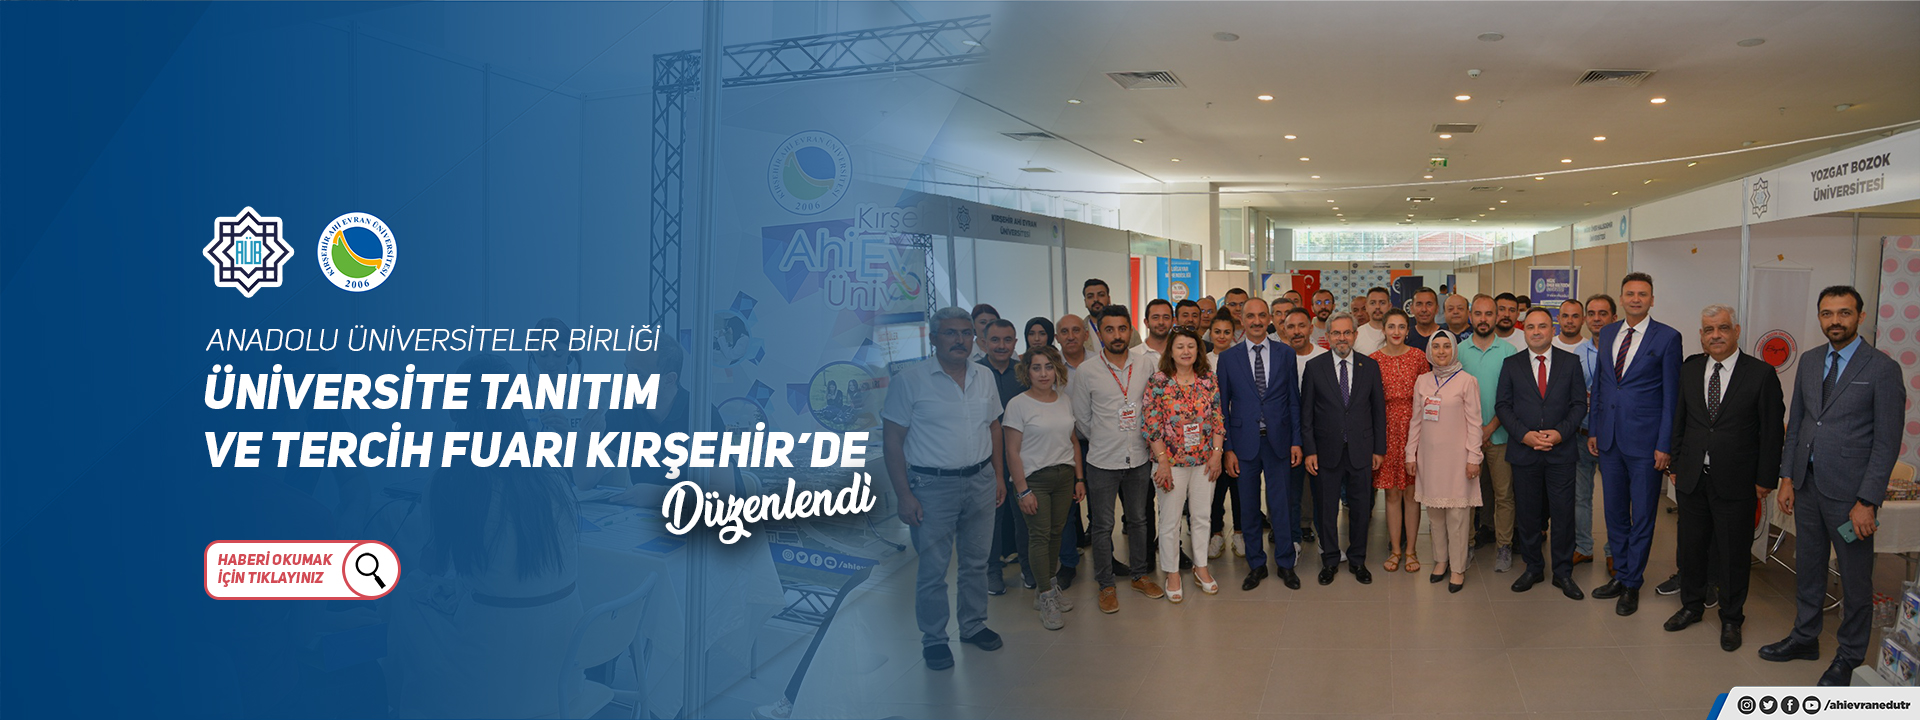 Anadolu Üniversiteler Birliği (AÜB) Üniversite Tanıtım ve Tercih Fuarı Kırşehir’de Düzenlendi